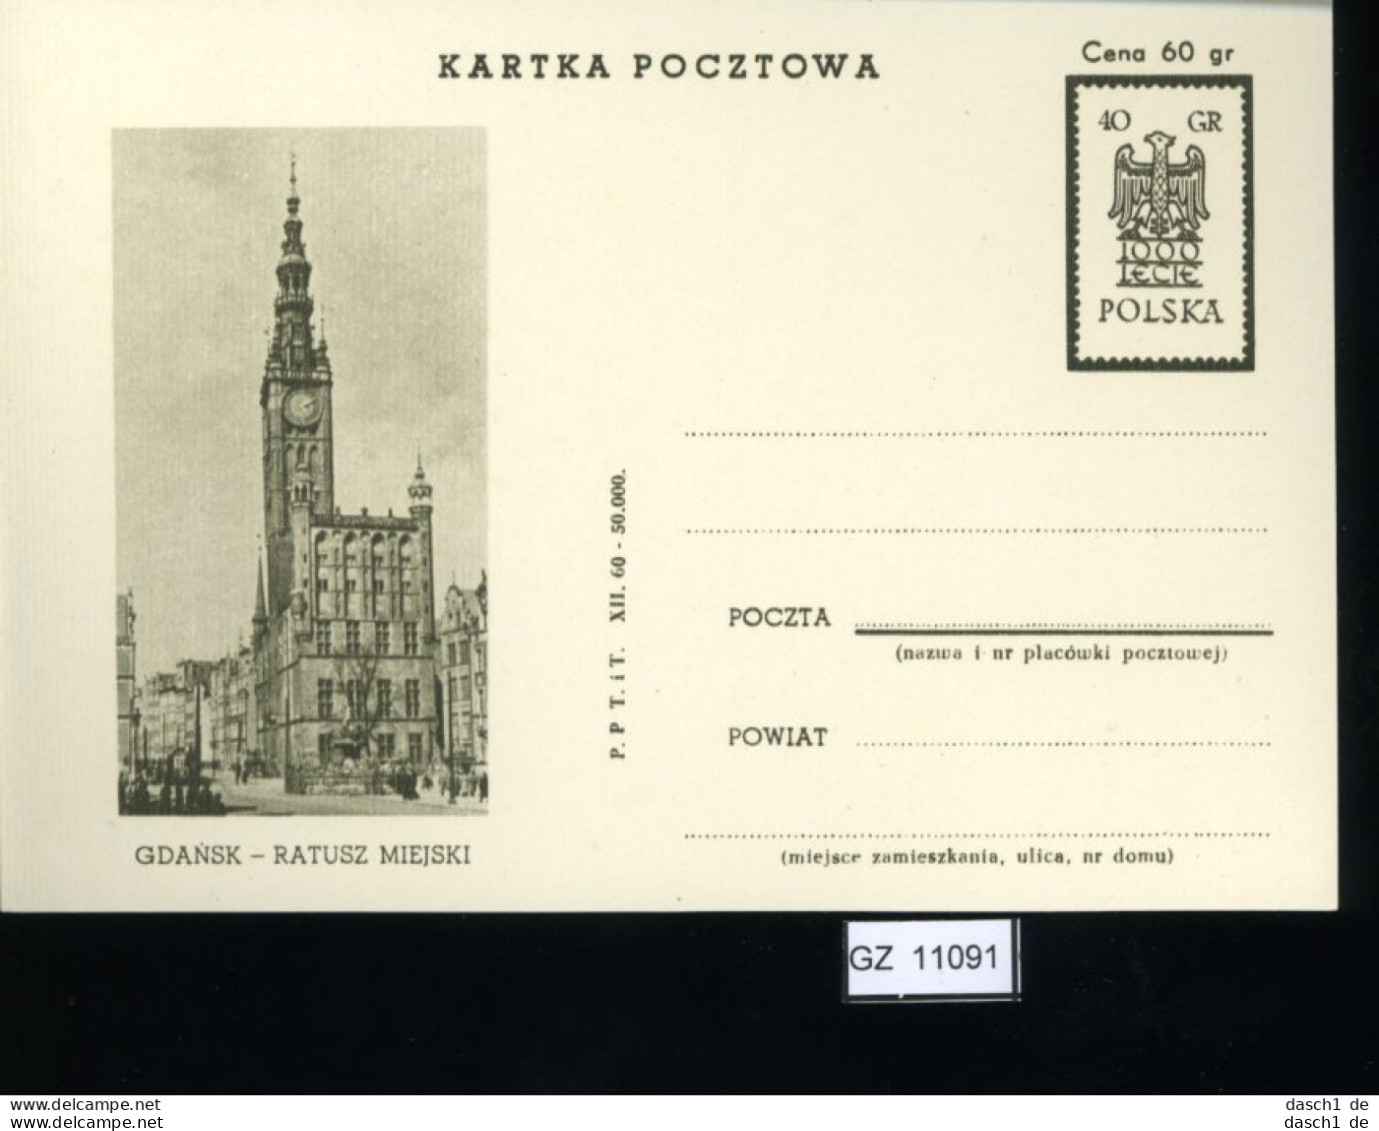 Polen 12 Lose u.a. Sonderpostkarte 1960